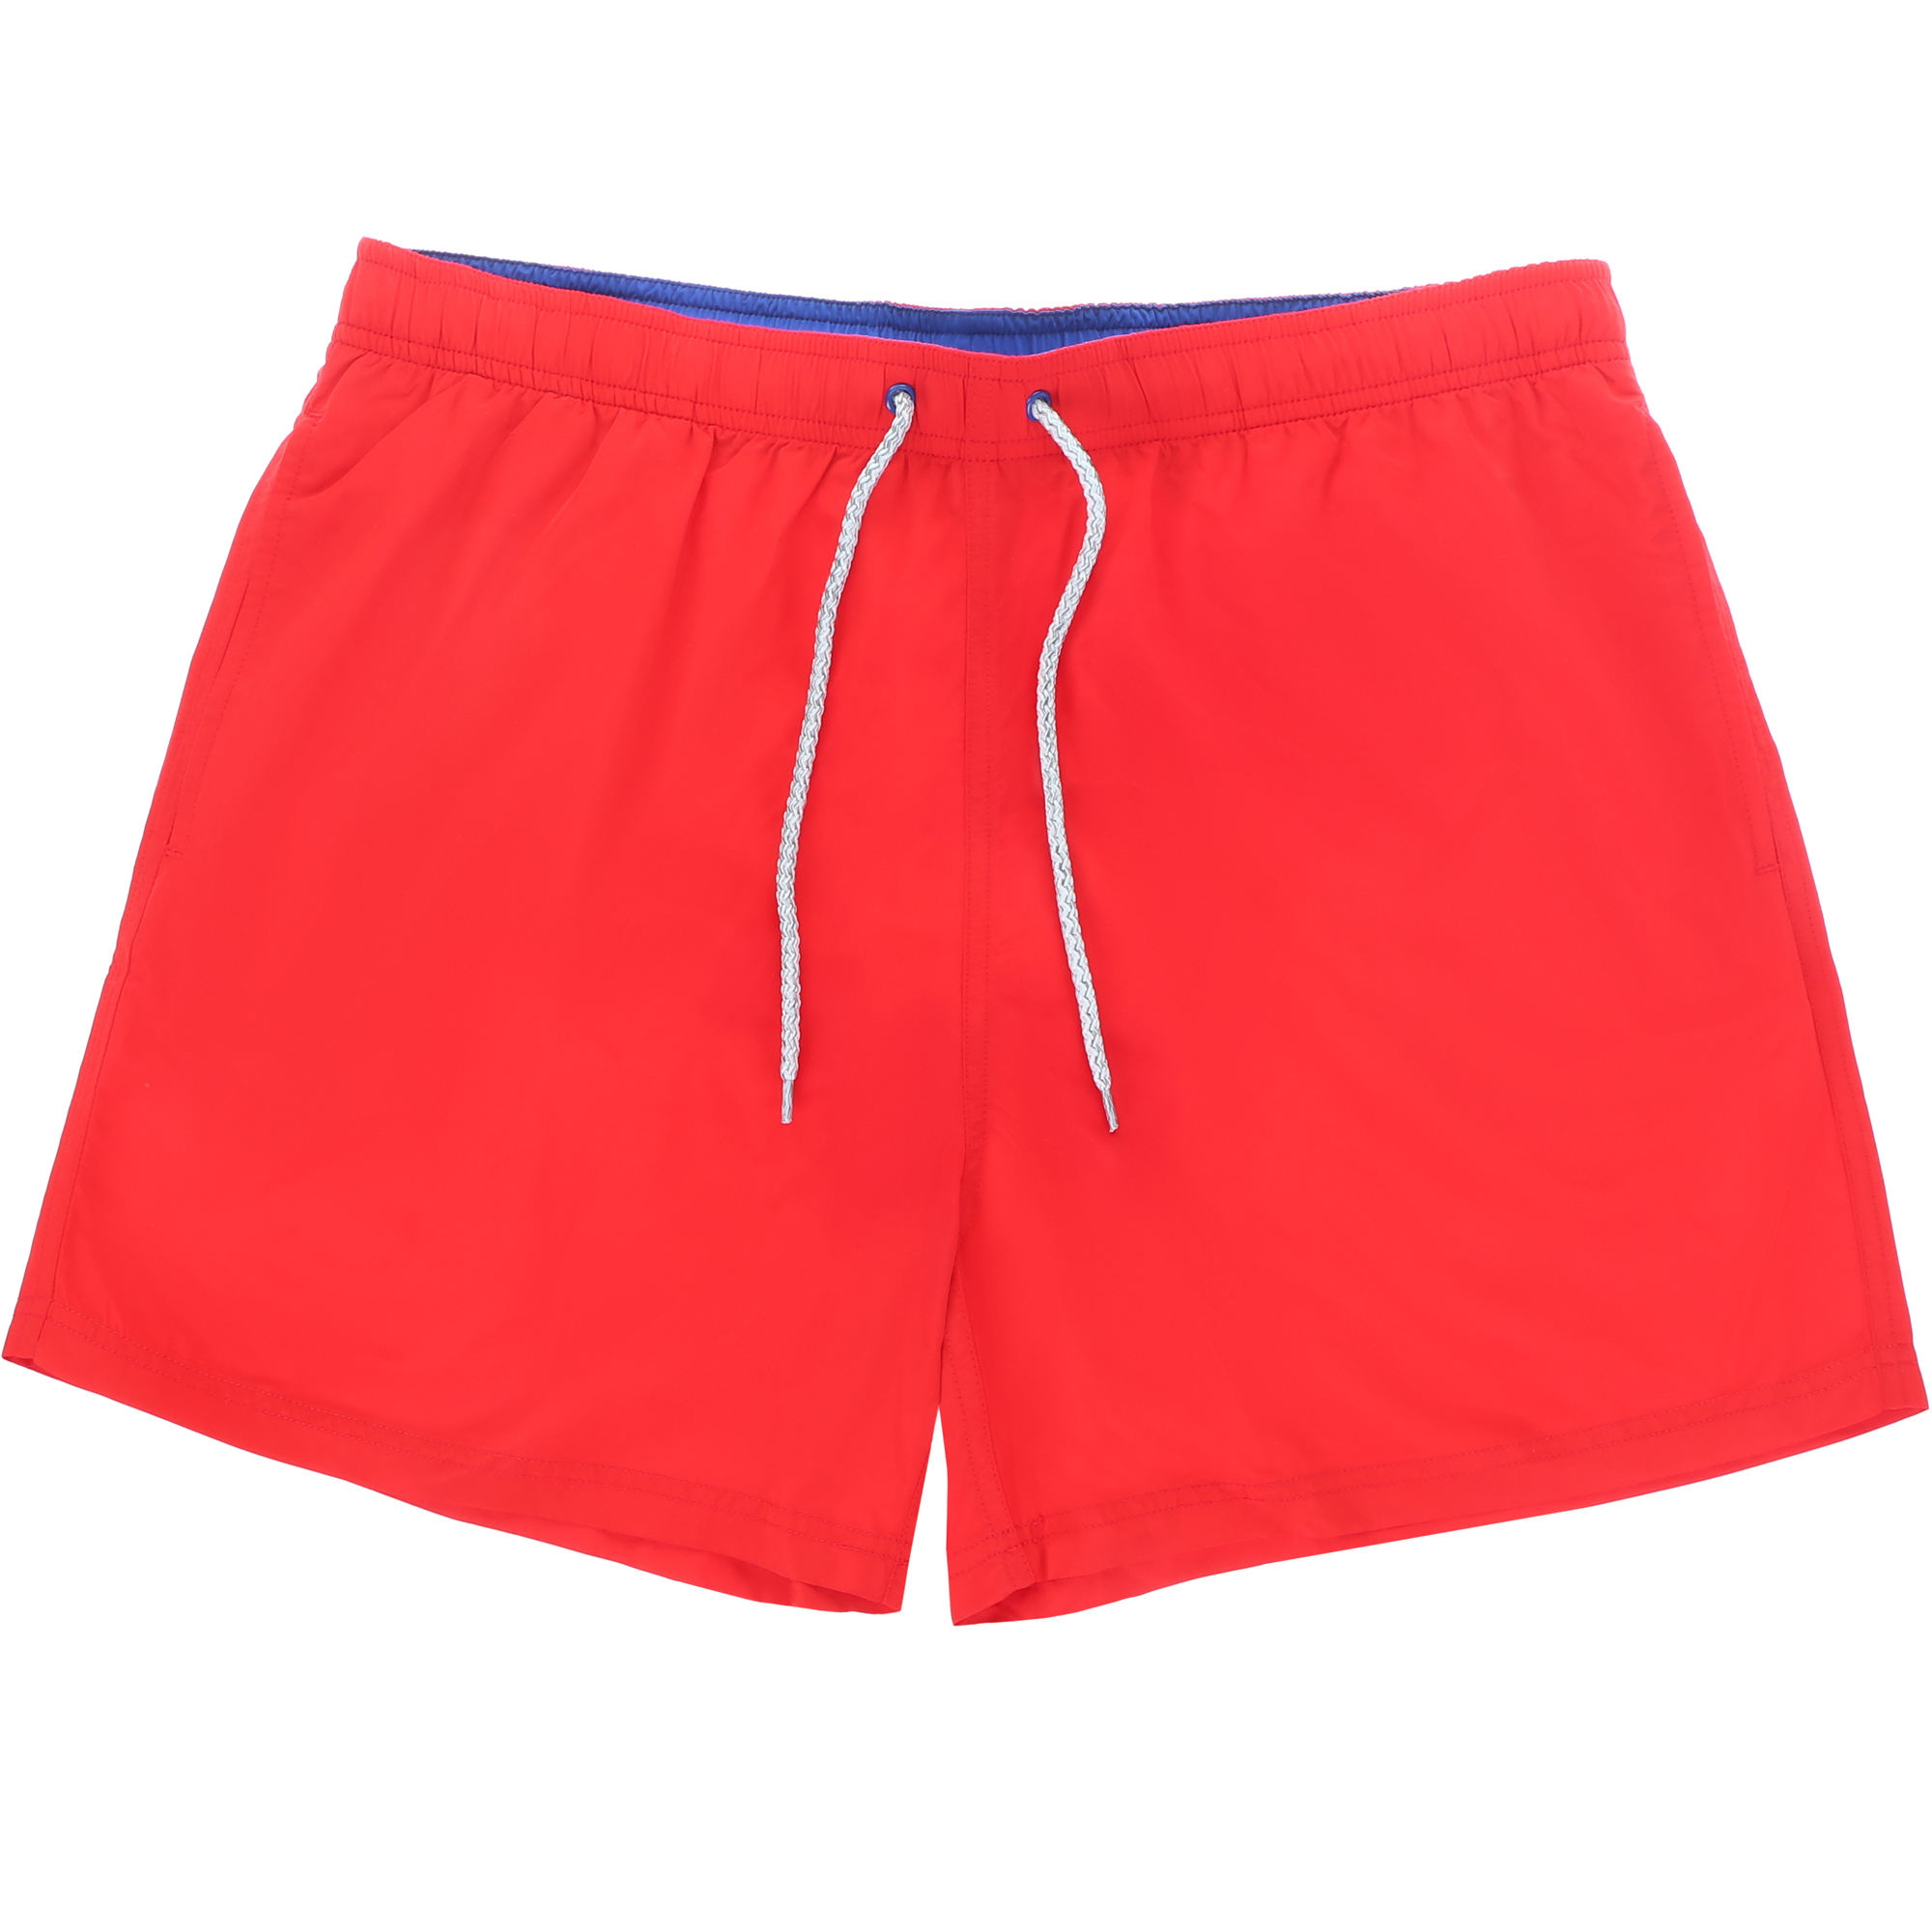 Мужские пляжные шорты Joyord красные, цвет красный, размер S - фото 1